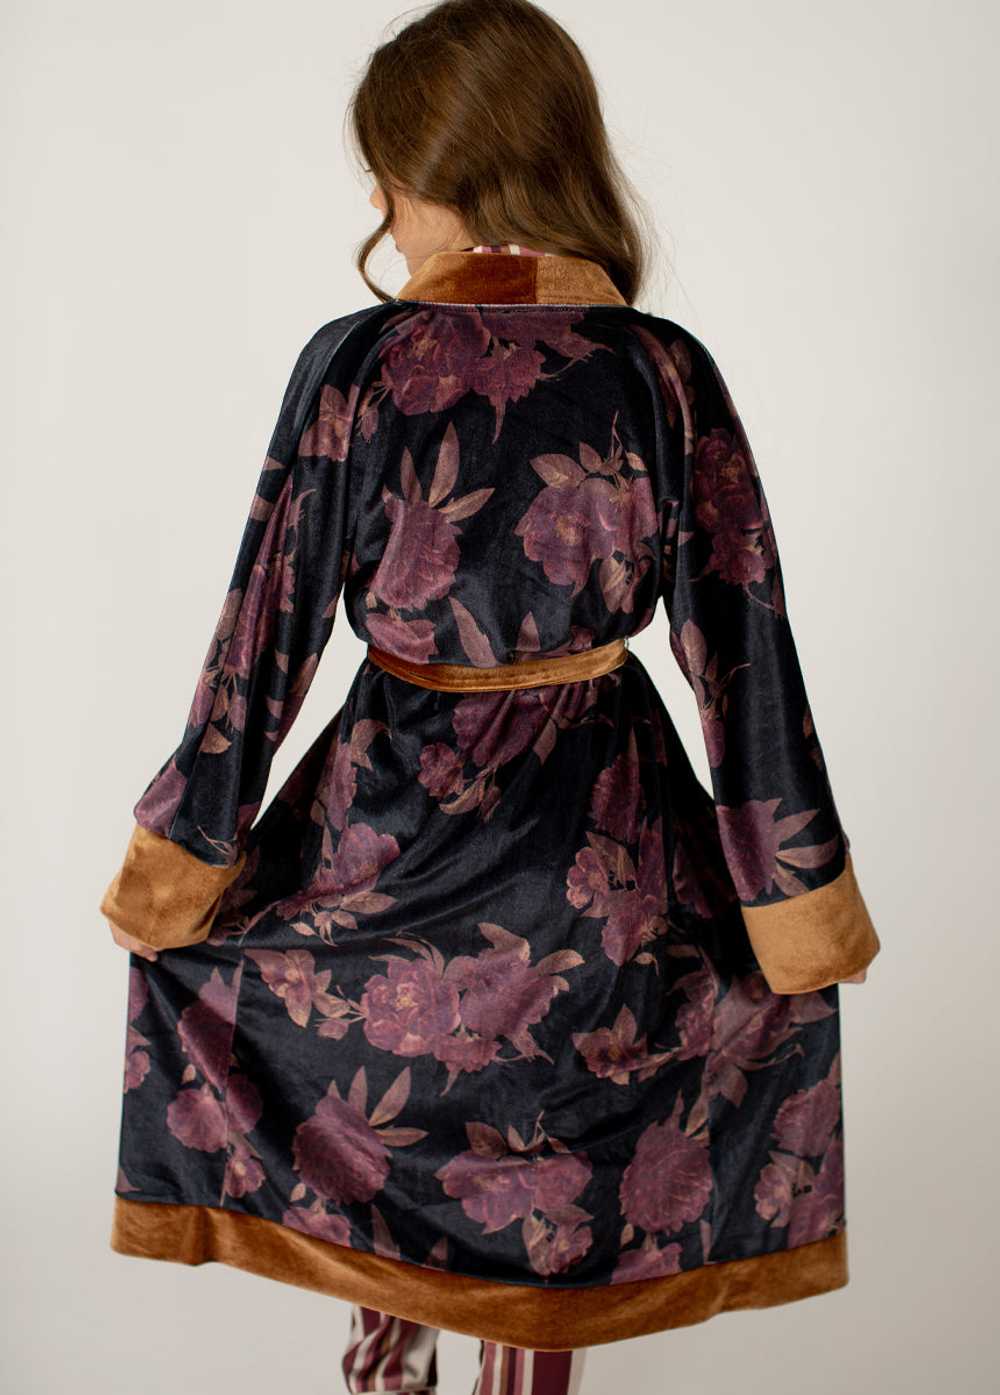 Joyfolie Kamie Robe in Black Floral - image 4